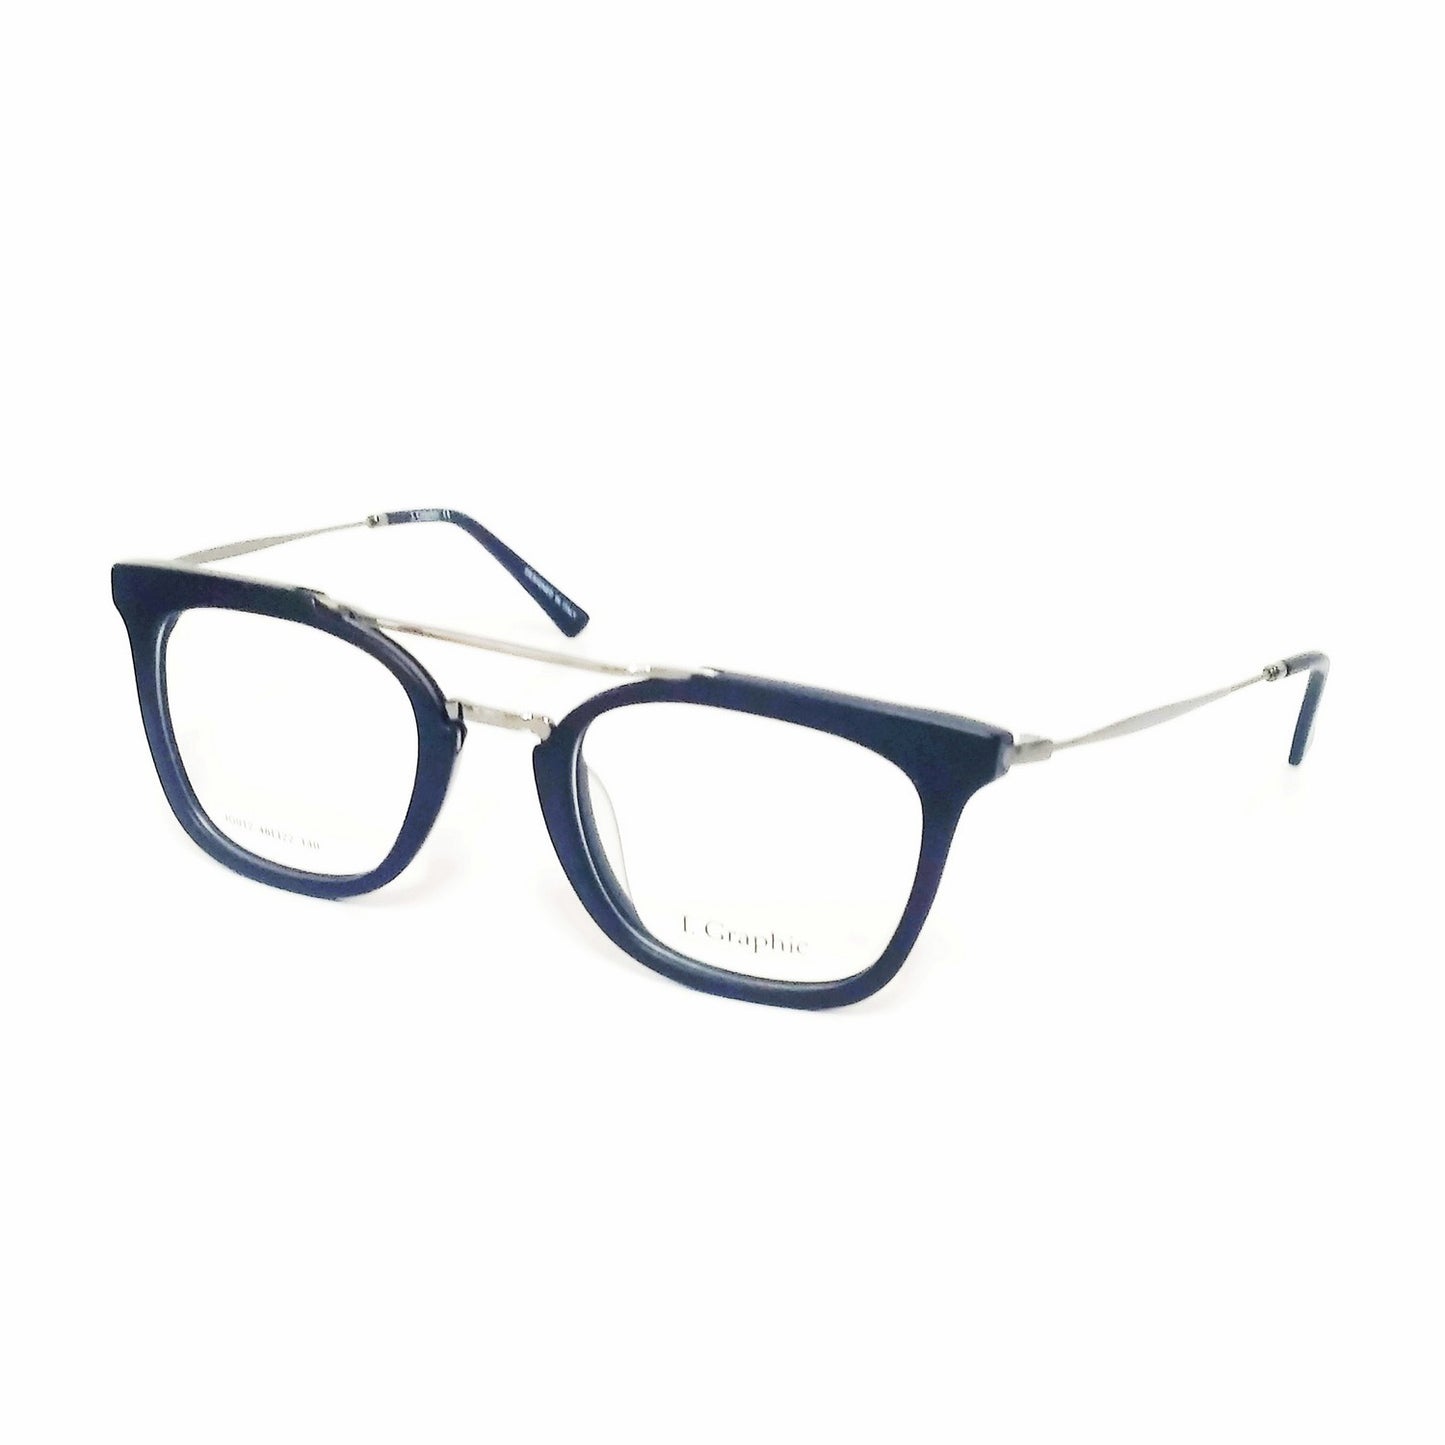 Premium Acetate Frame Black Full Frame Glasses Spectacle Frames for Men and Women IG012